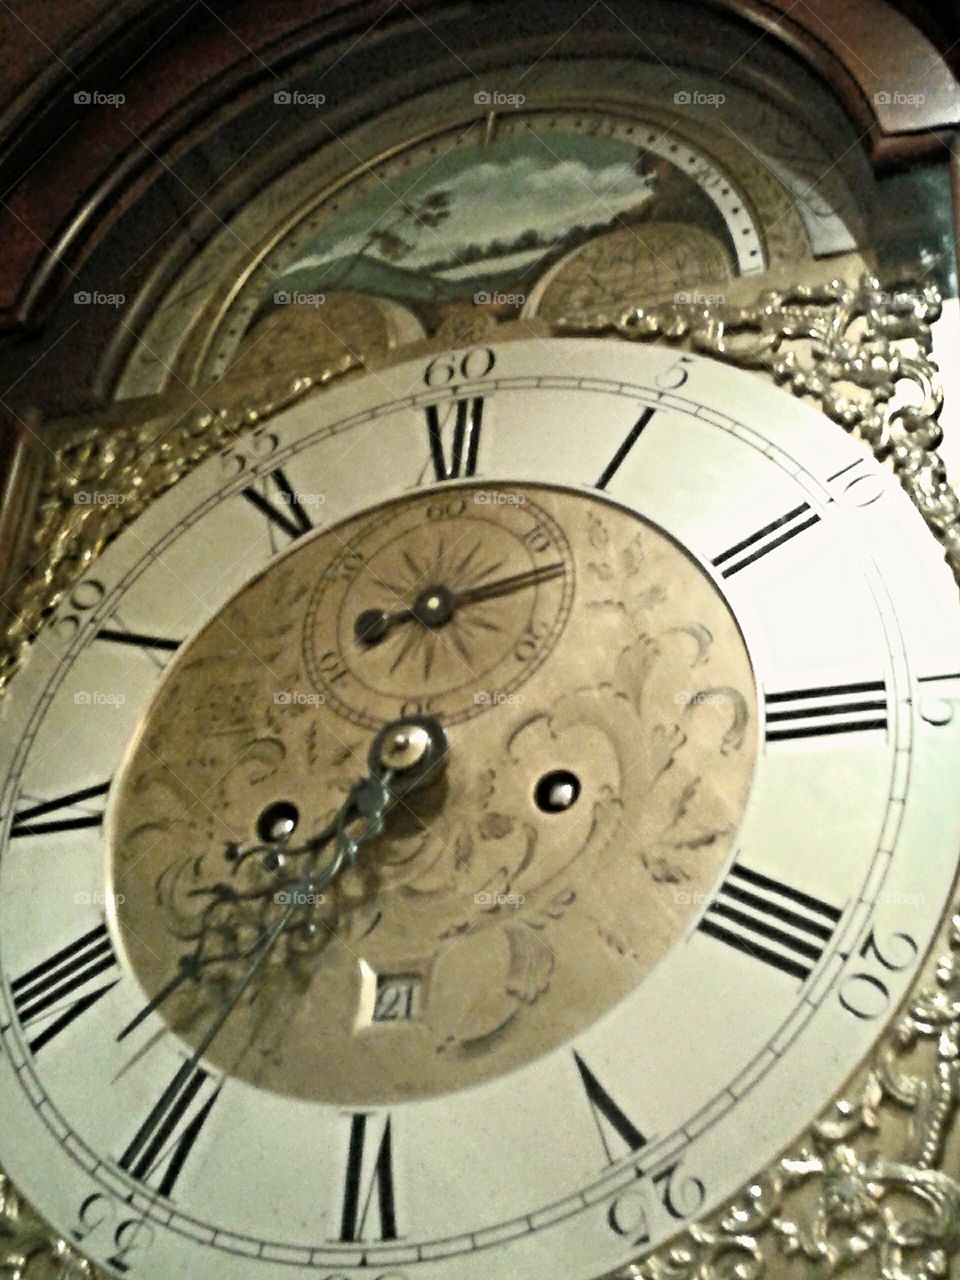 Clock face. A beautiful time piece.